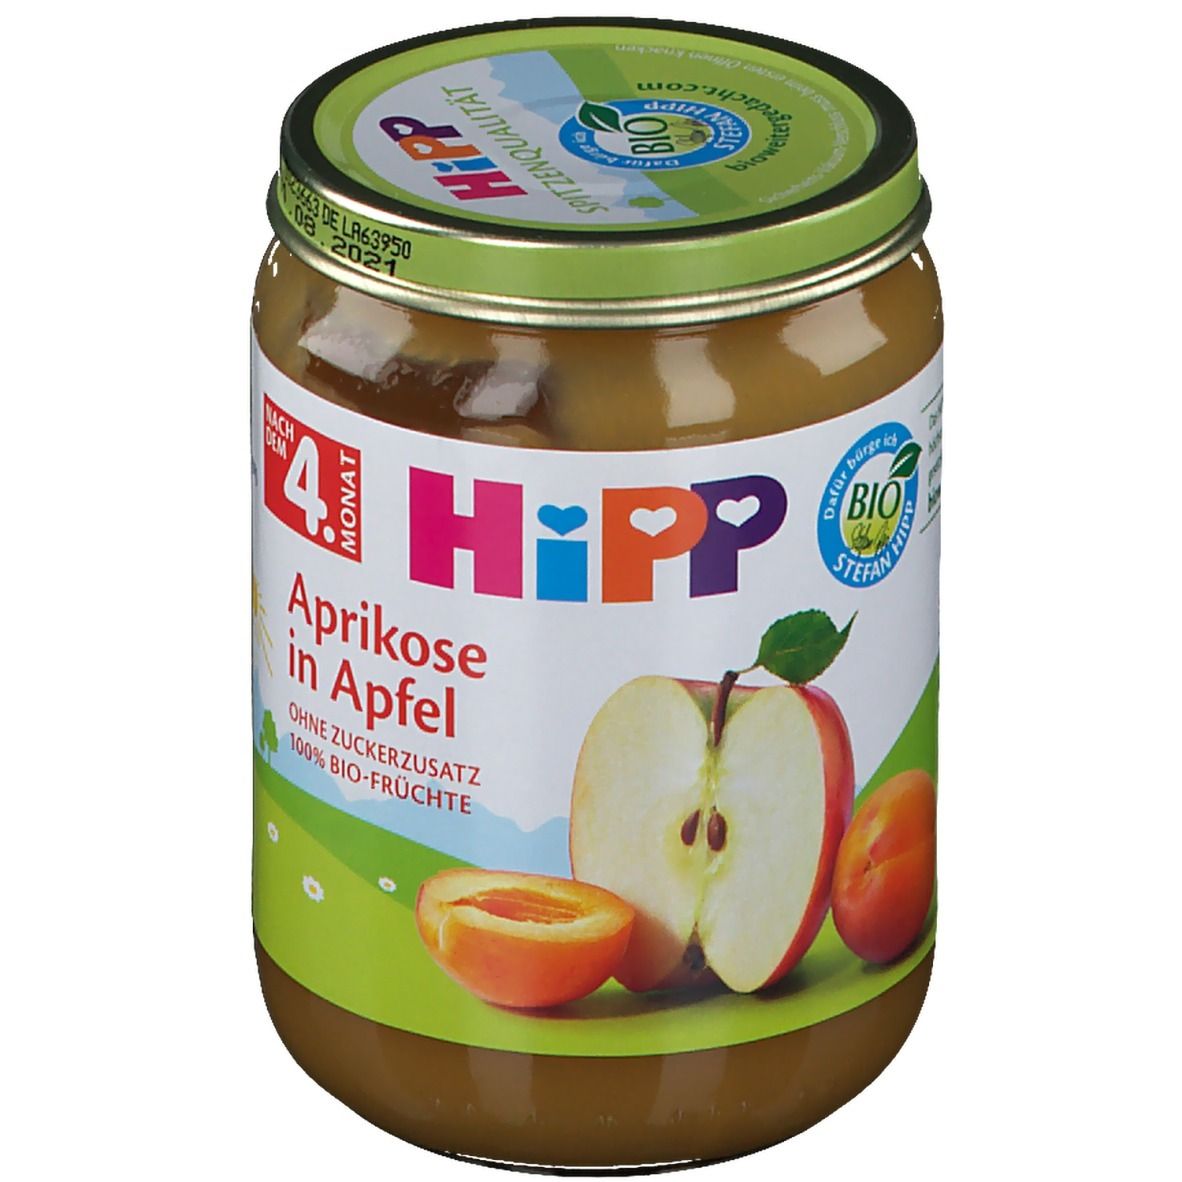 Hipp Aprikose in Apfel ab dem 5. Monat